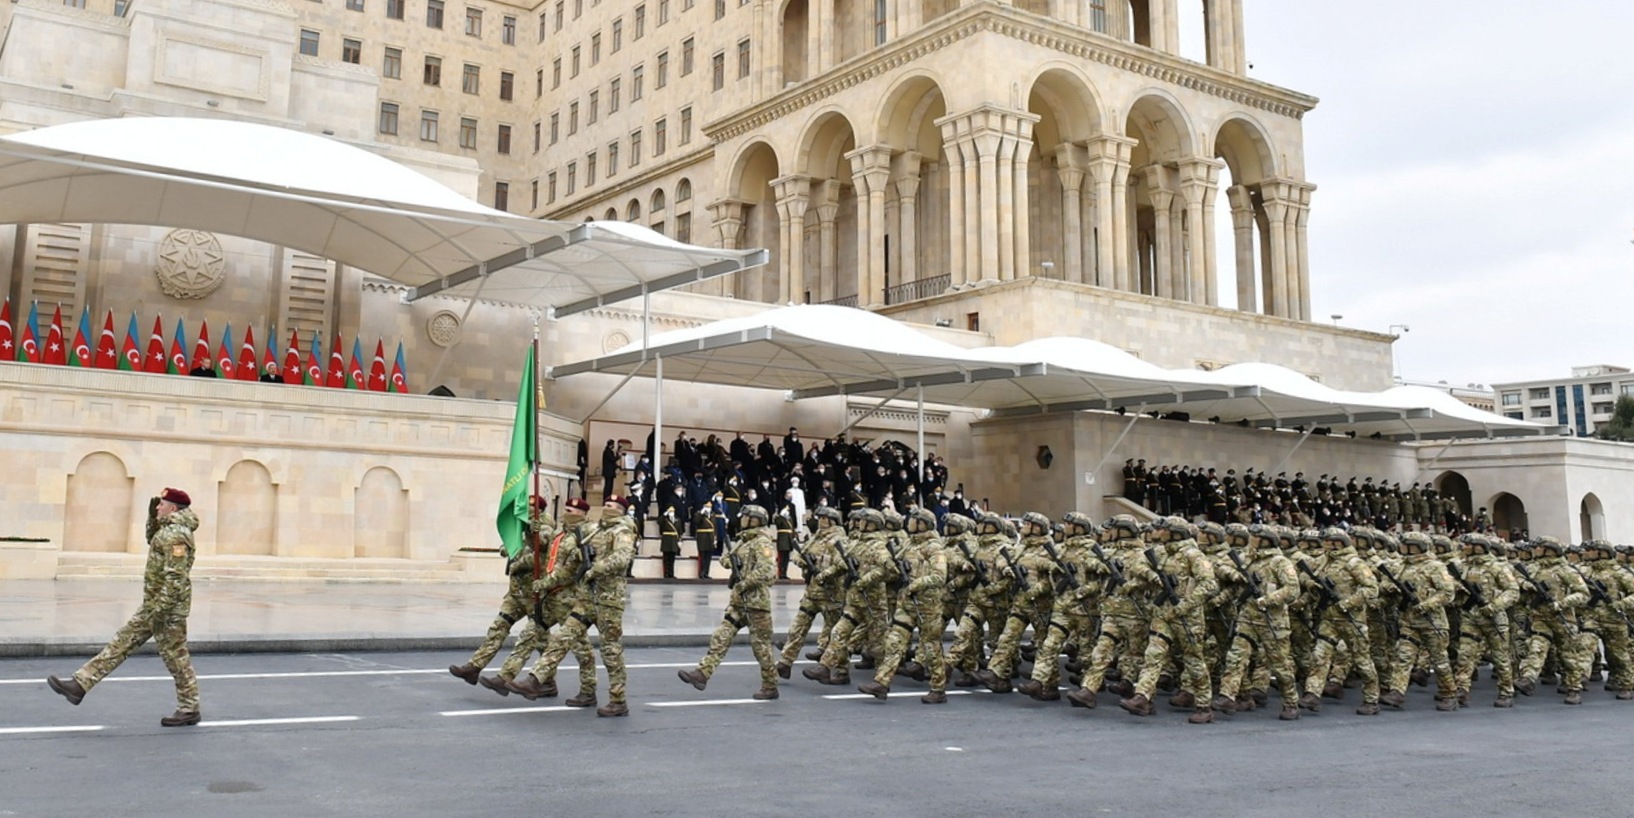 Бойцы «Яшмы» проходят перед перед президентами Азербайджана и Турции на Параде Победы по случаю победы Азербайджана в войне в Нагорном Карабахе. 10 декабря 2020 года. Баку